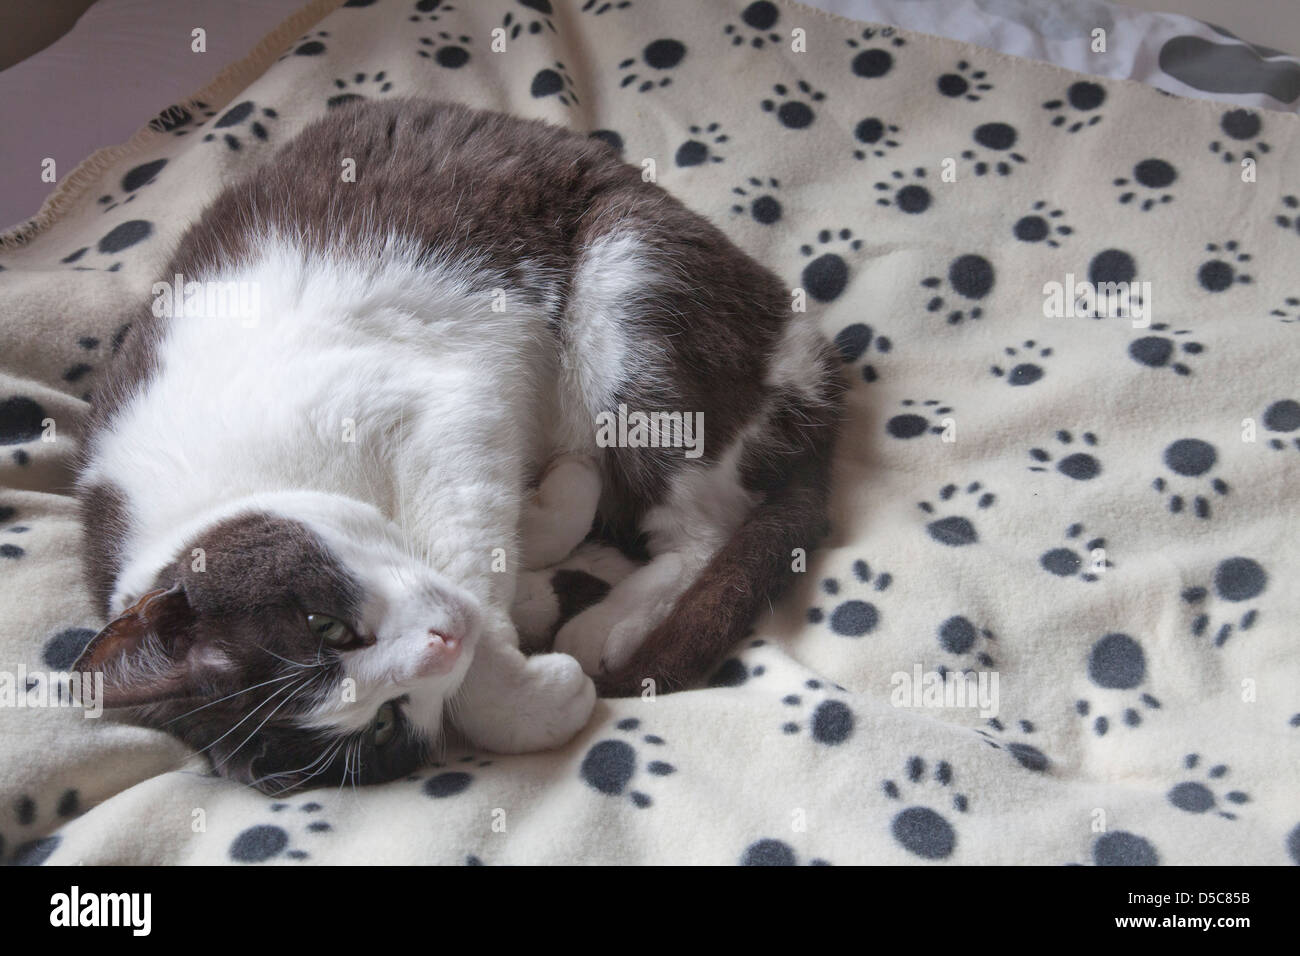 Cat recroquevillée sur couverture avec empreintes. Banque D'Images